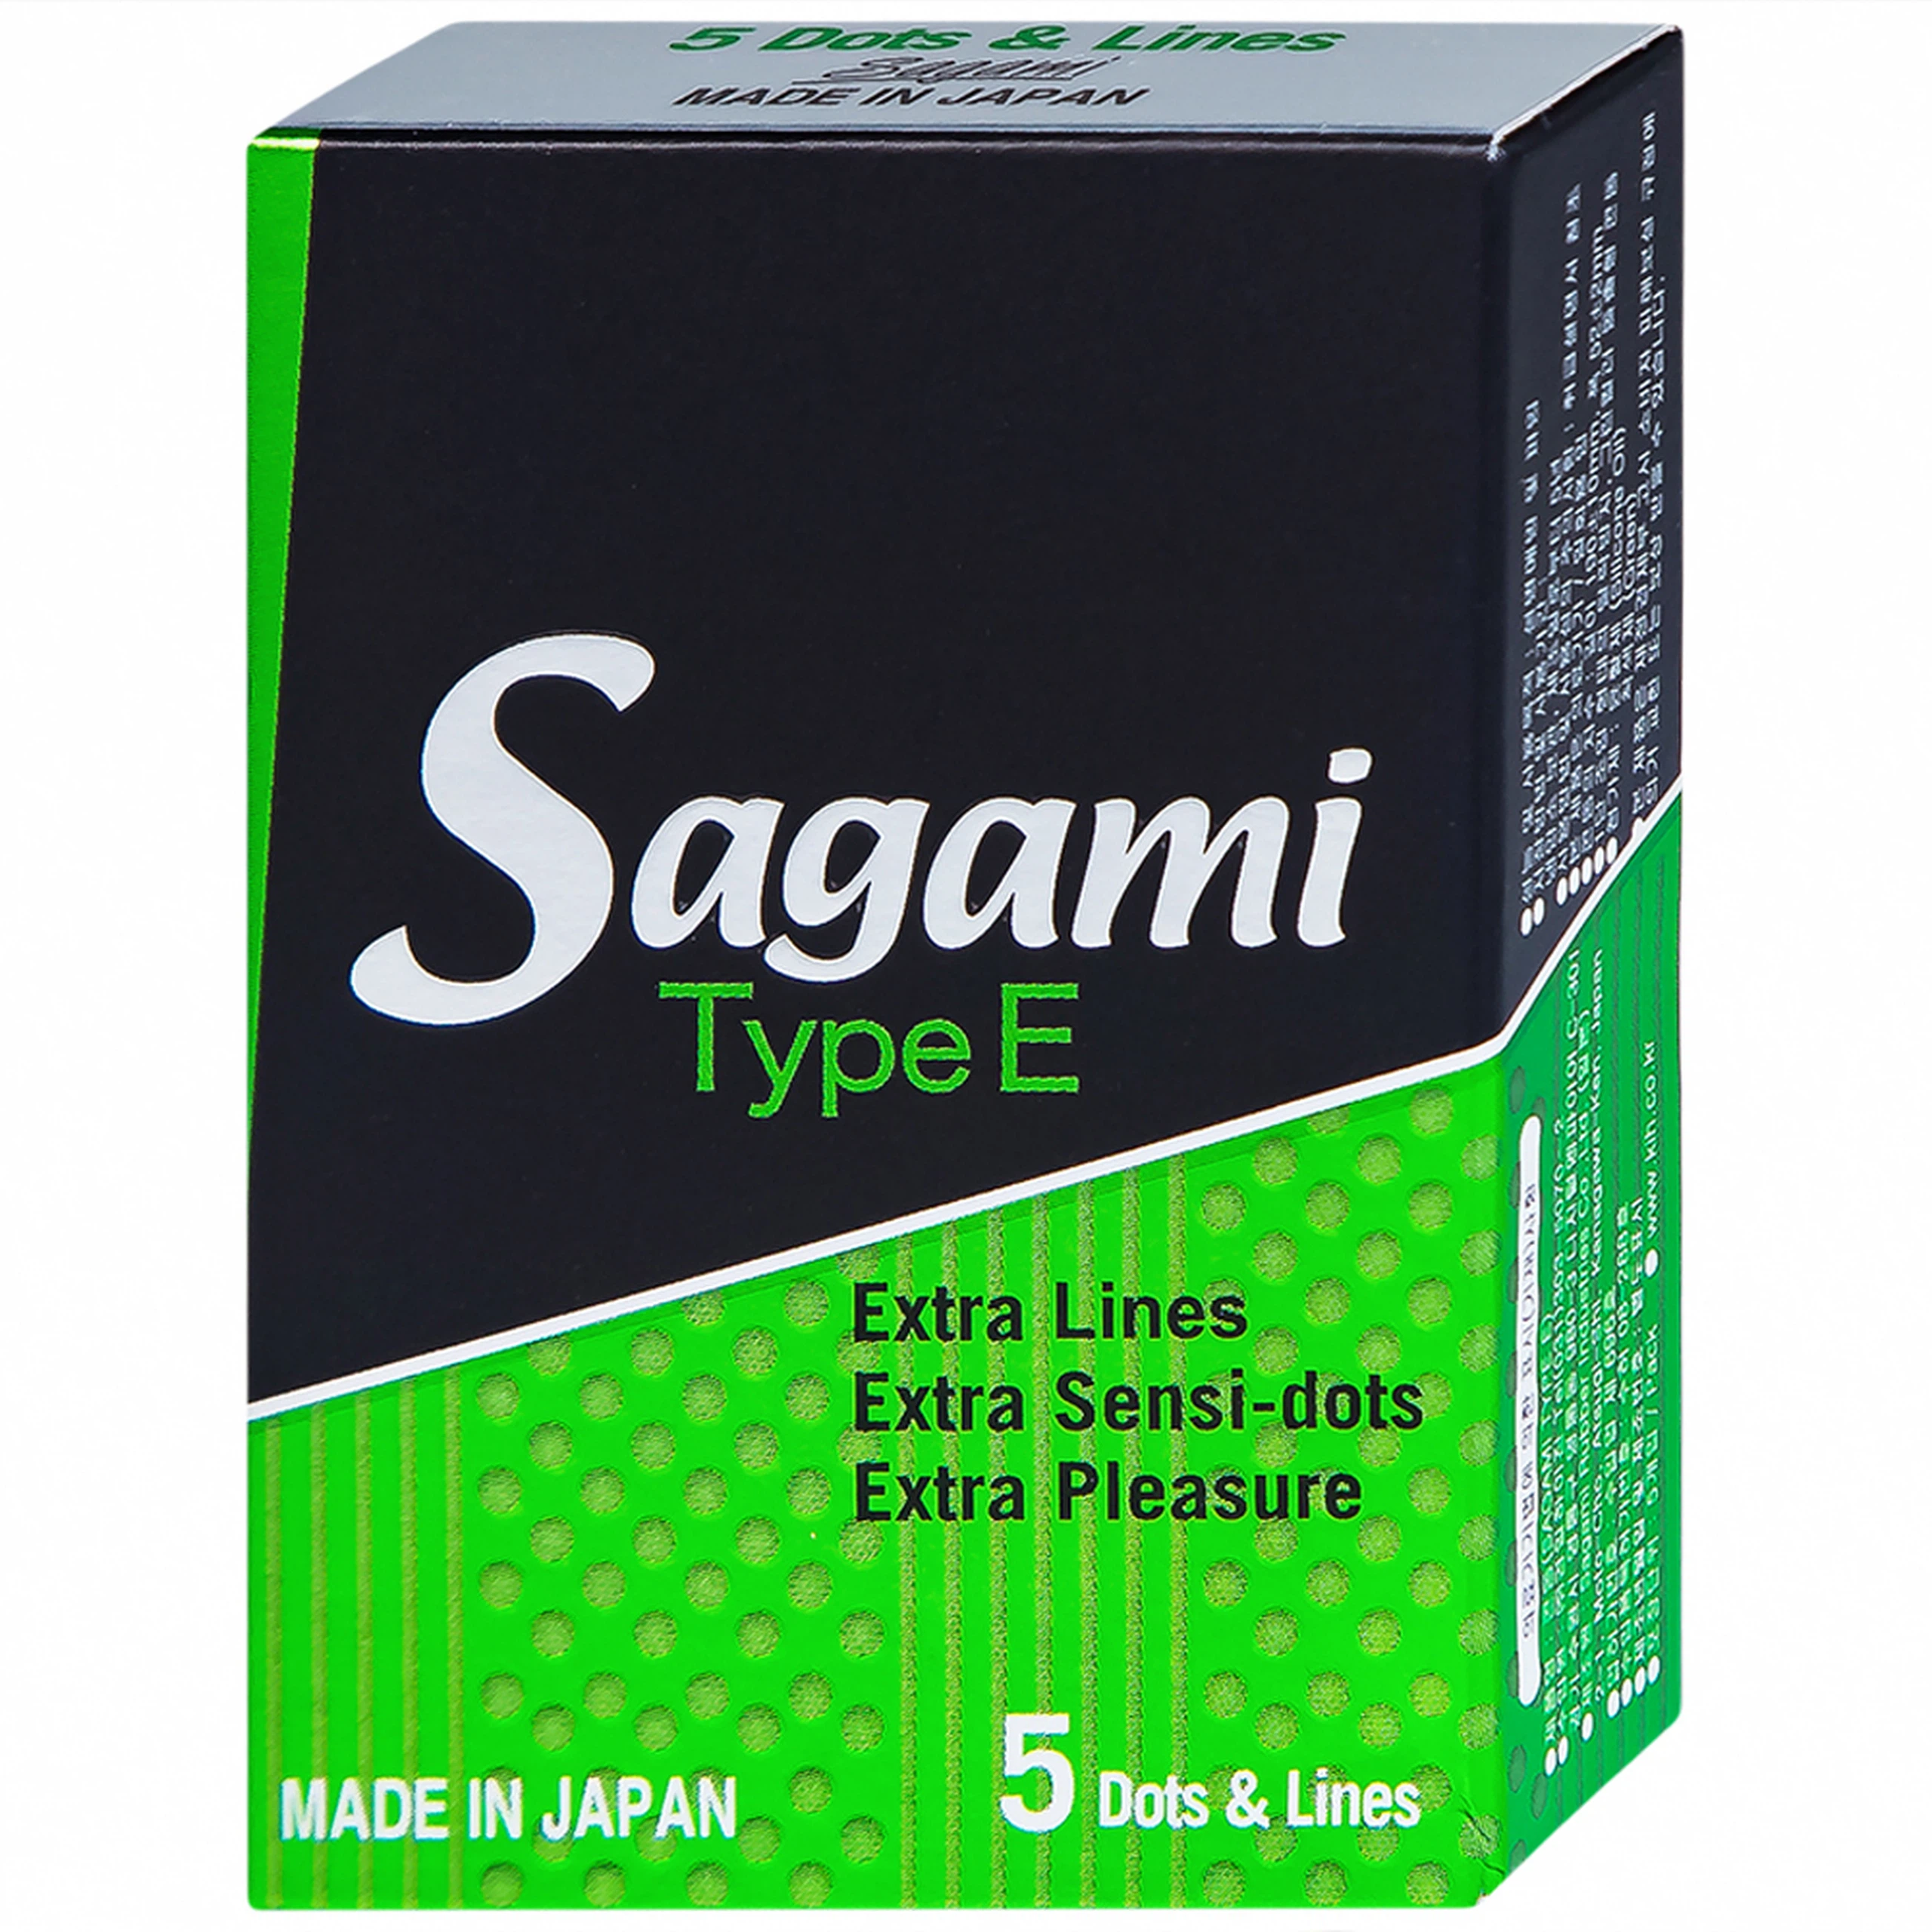 Bao cao su Sagami Type E màu xanh có gân gai phòng tránh thai và bệnh lây qua đường tình dục (5 cái)